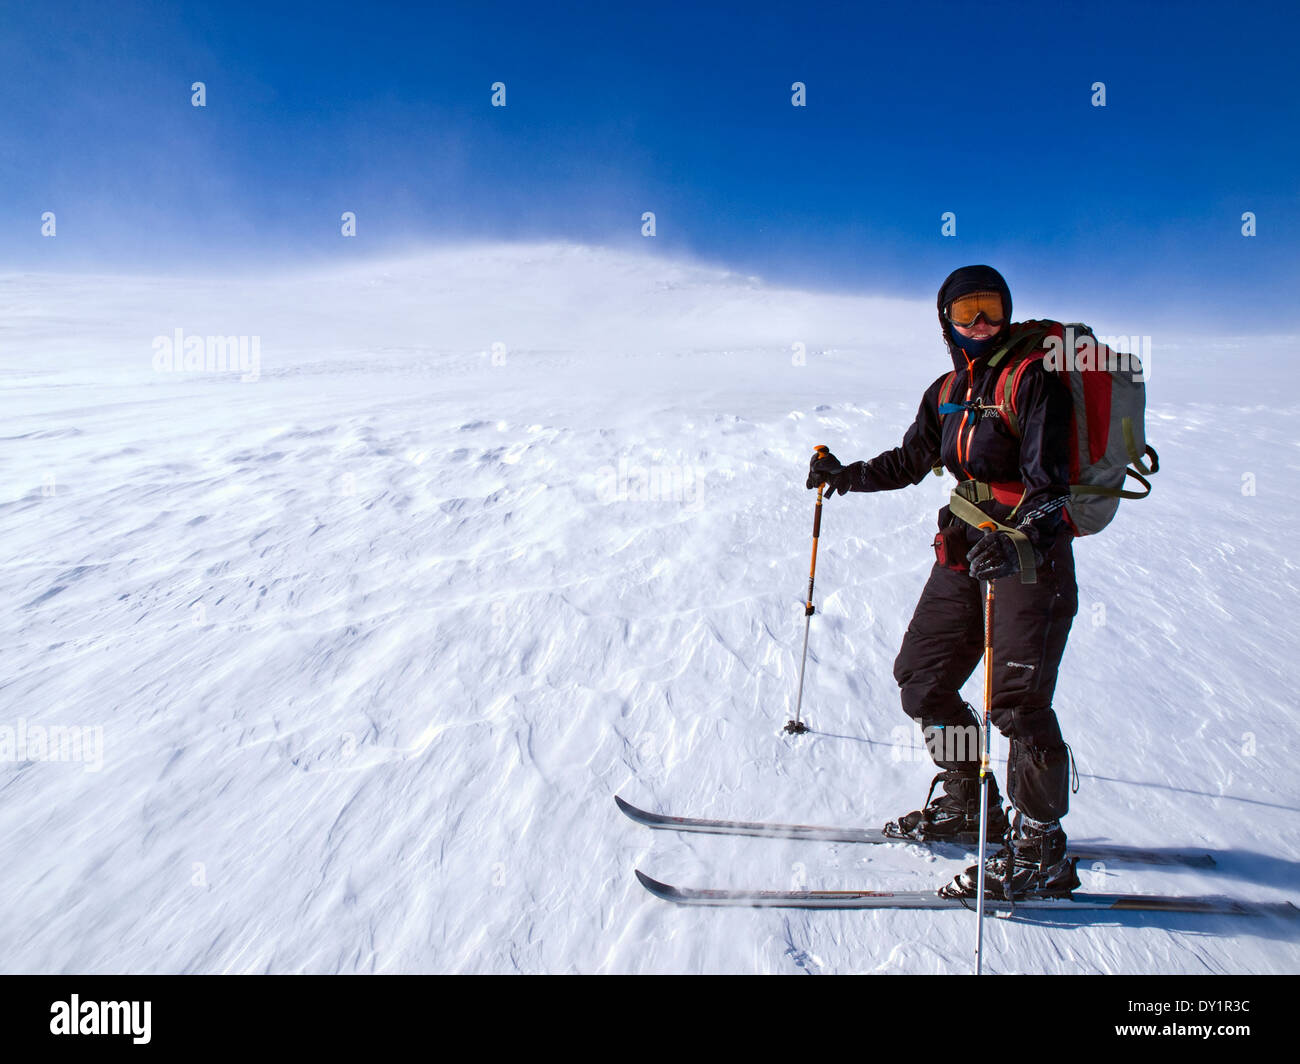 Ski-touring in the Rondane, Norway Stock Photo